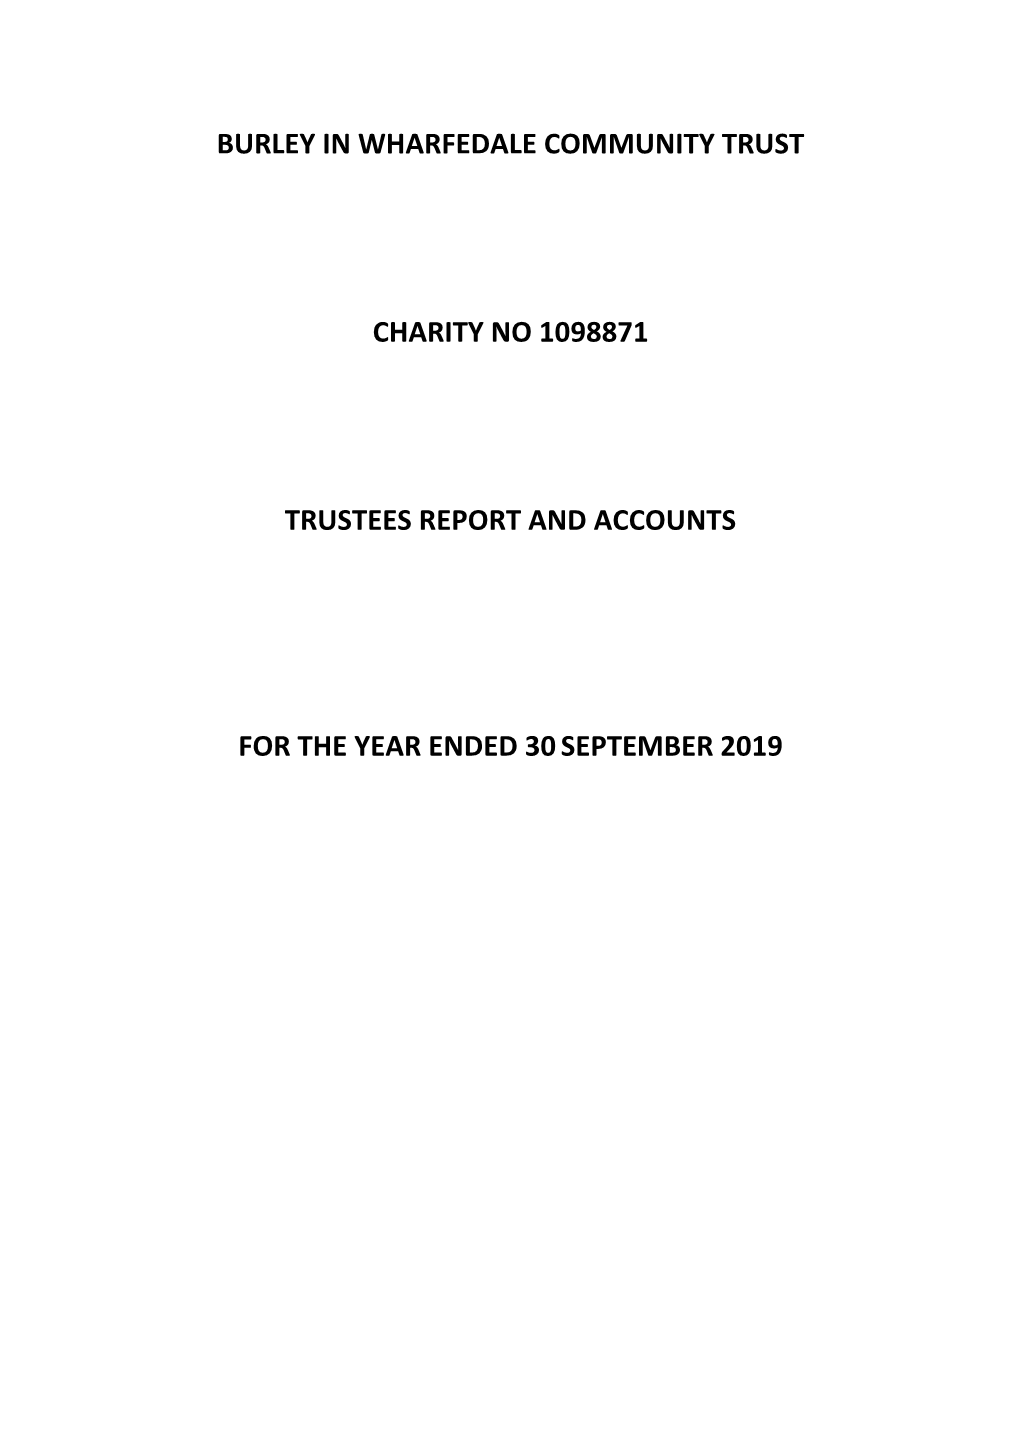 2019 Trustee Report